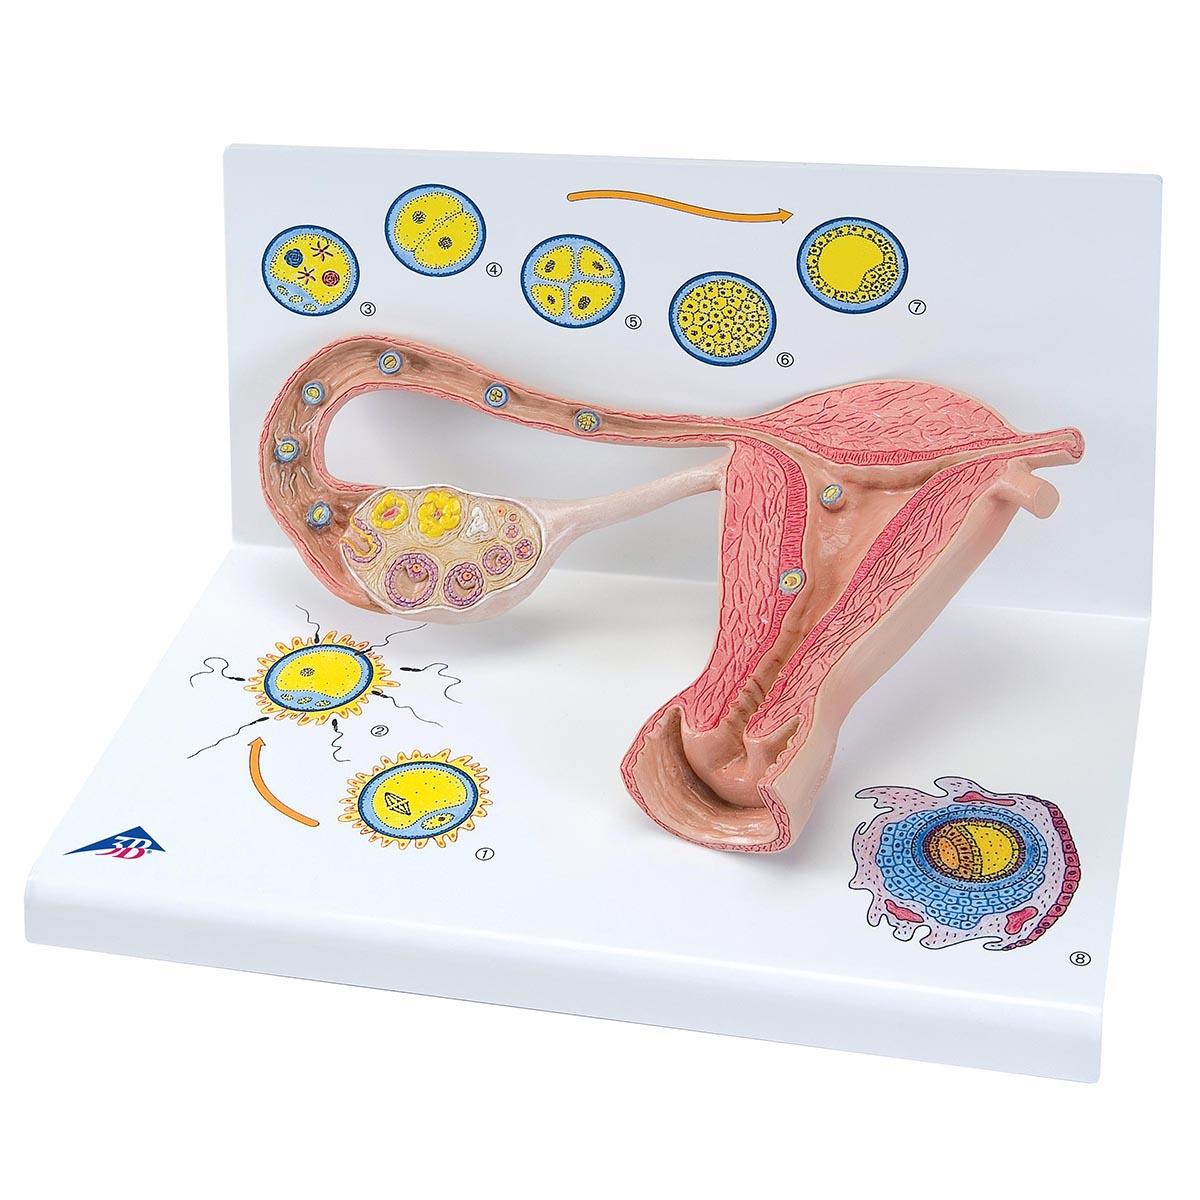 L01-1 Těhotenství, porod - ostatní: Model stádií oplodnění a embrya, 2x zvětšeno